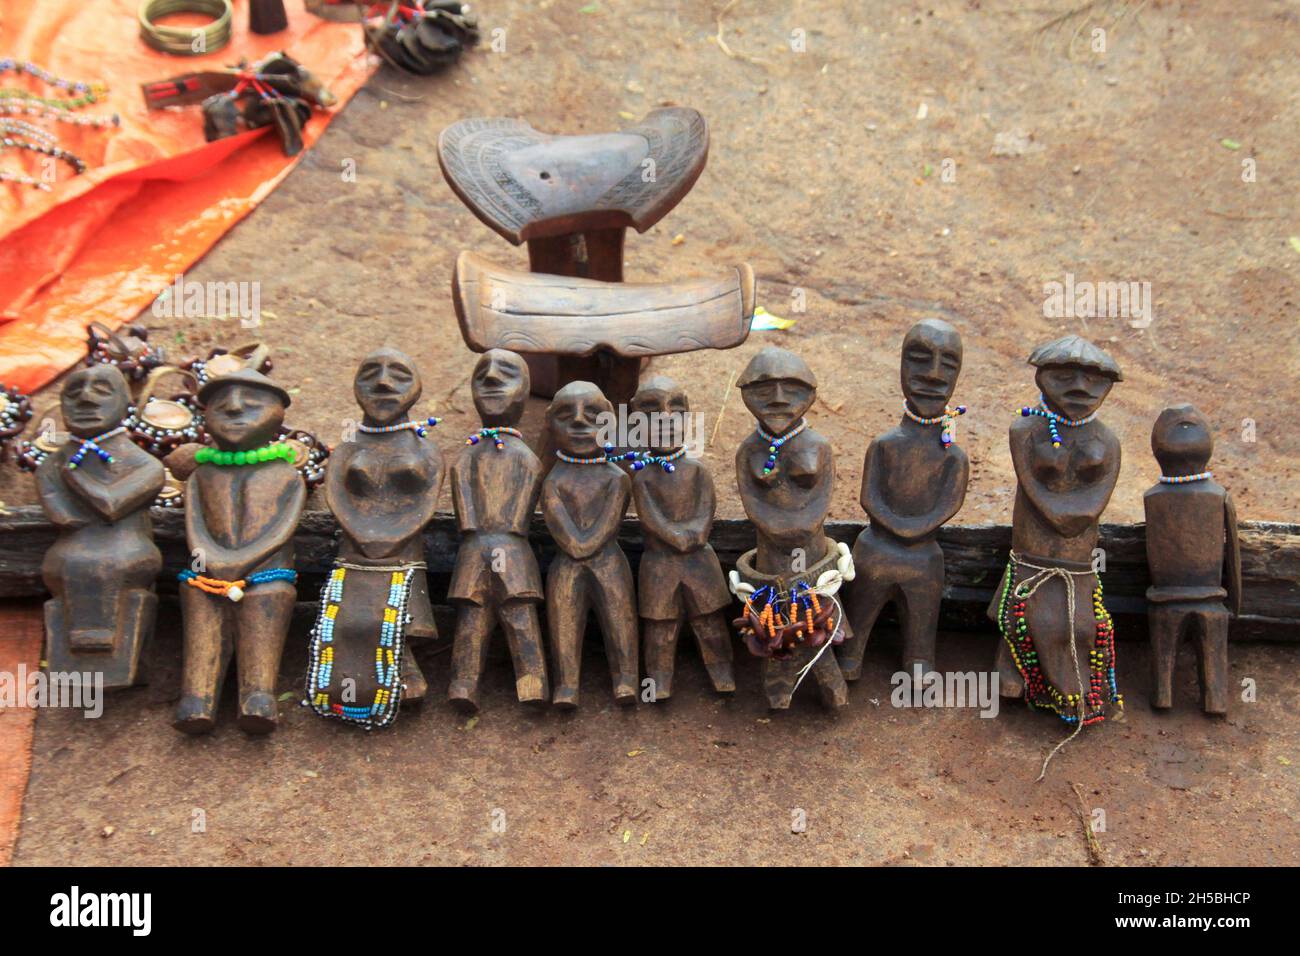 Figurines en bois sculpté à la main Hamar Tribe.Photographié dans la vallée de la rivière Omo, en Éthiopie Banque D'Images